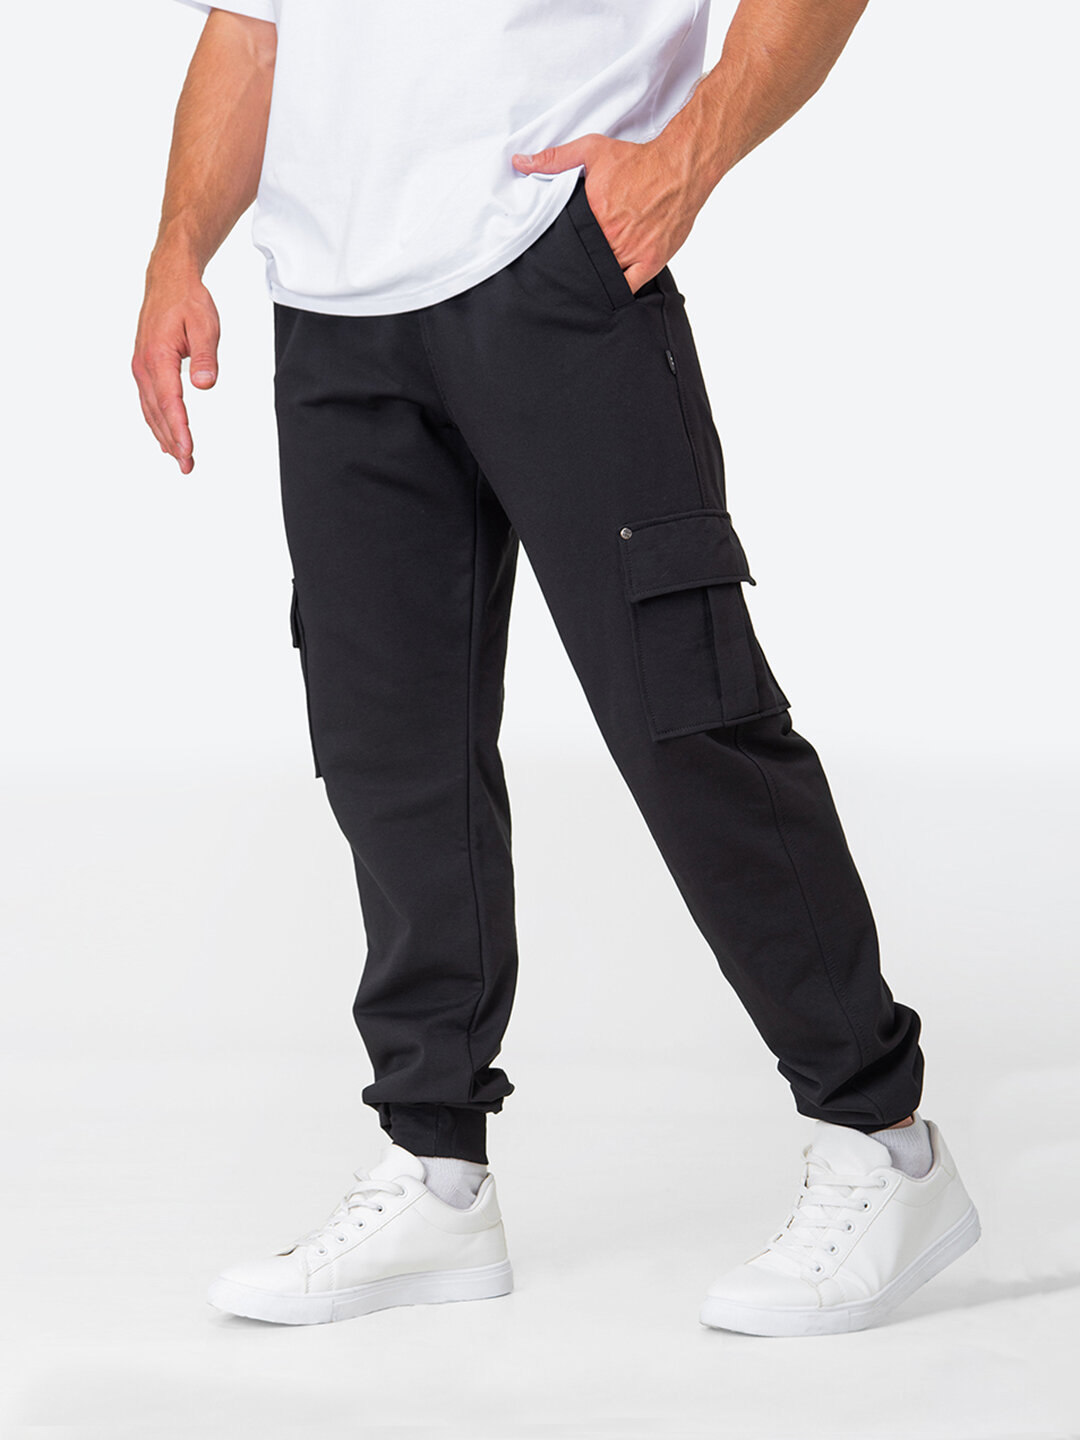 Спортивные штаны мужские джоггеры демисезонные для мужчин HappyFox, HF9122